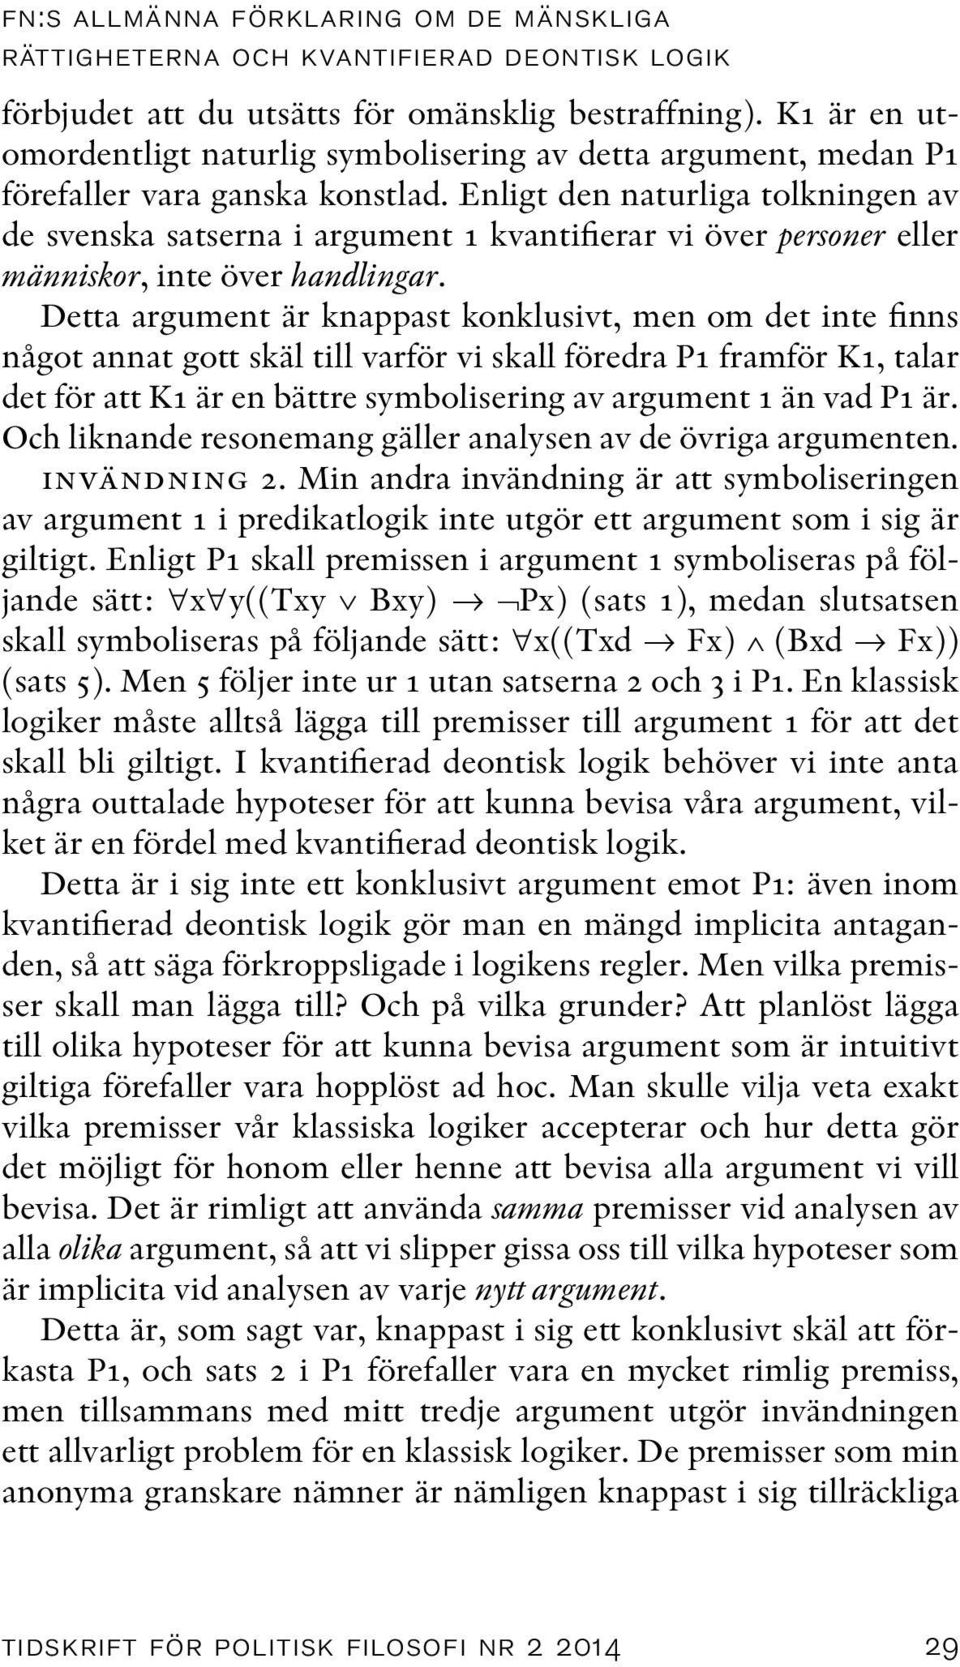 Enligt den naturliga tolkningen av de svenska satserna i argument 1 kvantifierar vi över personer eller människor, inte över handlingar.